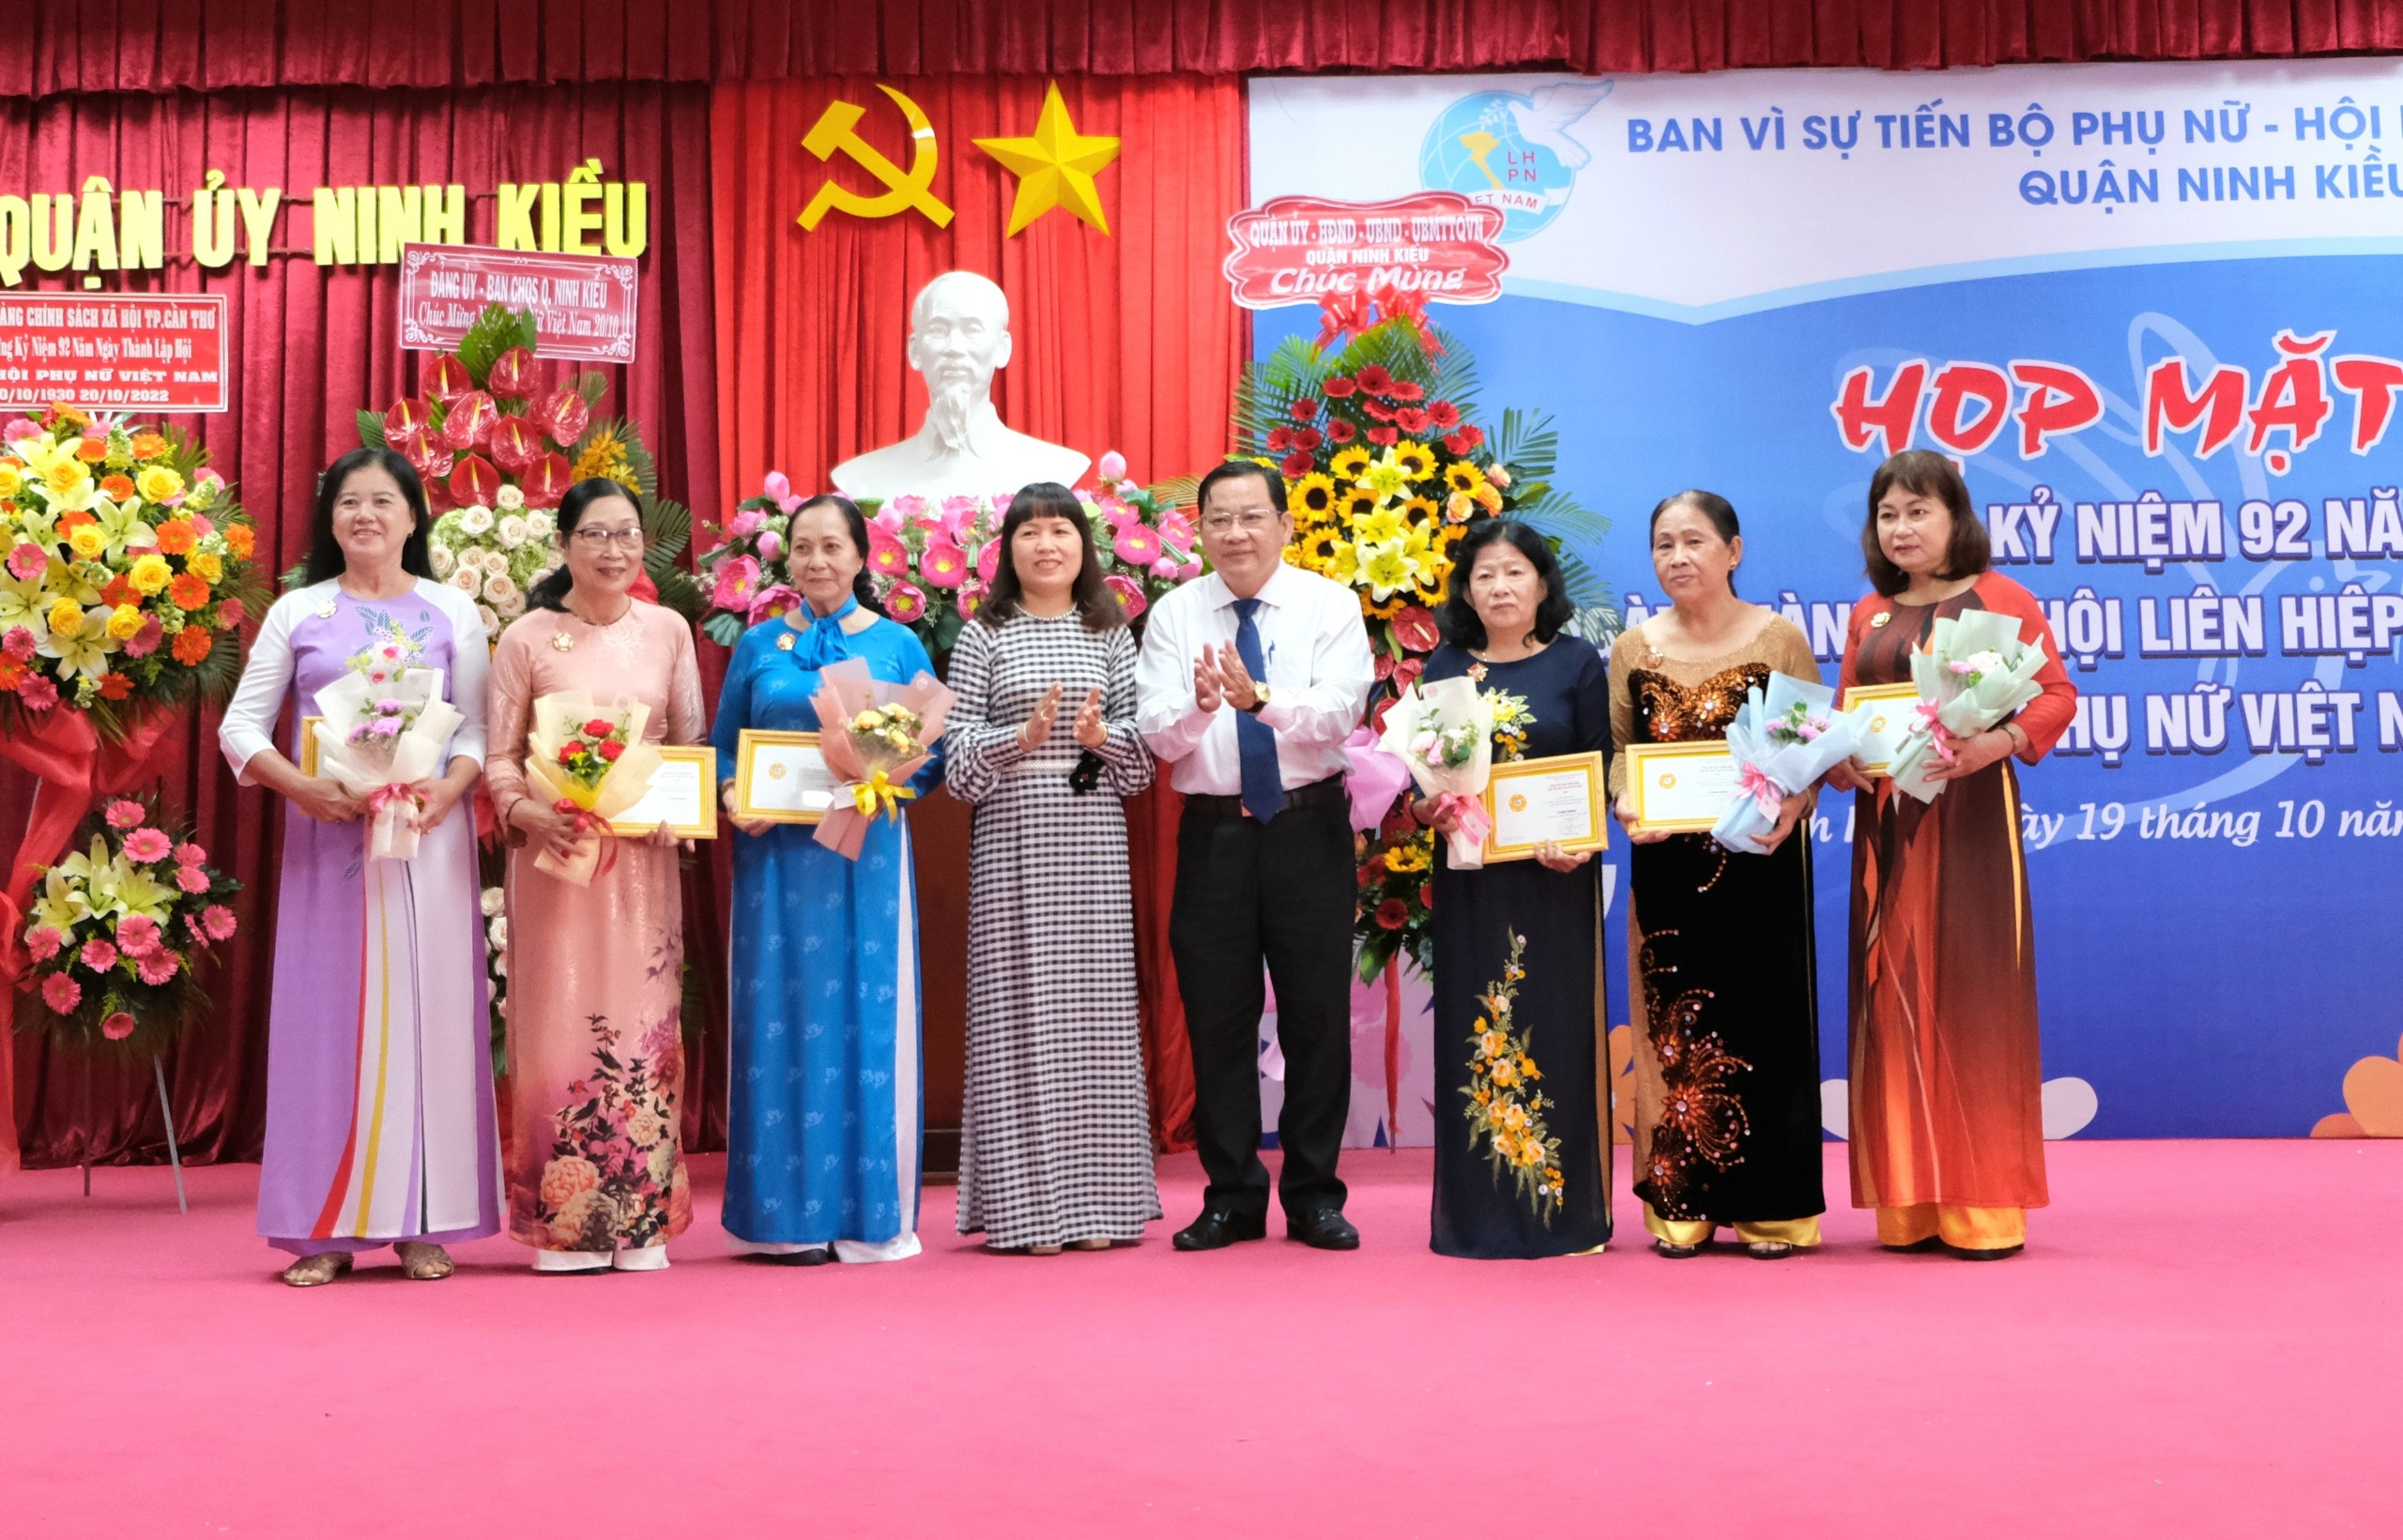 Bà Lê Thị Thúy Hằng - Phó Chủ tịch Hội LHPN TP. Cần Thơ và ông Trần Tiến Dũng - Phó Bí thư thường trực Quận ủy, Chủ tịch HĐND quận Ninh Kiều trao tặng kỷ niệm chương cho các các nhân đạt thành tích 'Vì sự tiến bộ của Phụ nữ Việt Nam' năm 2022.